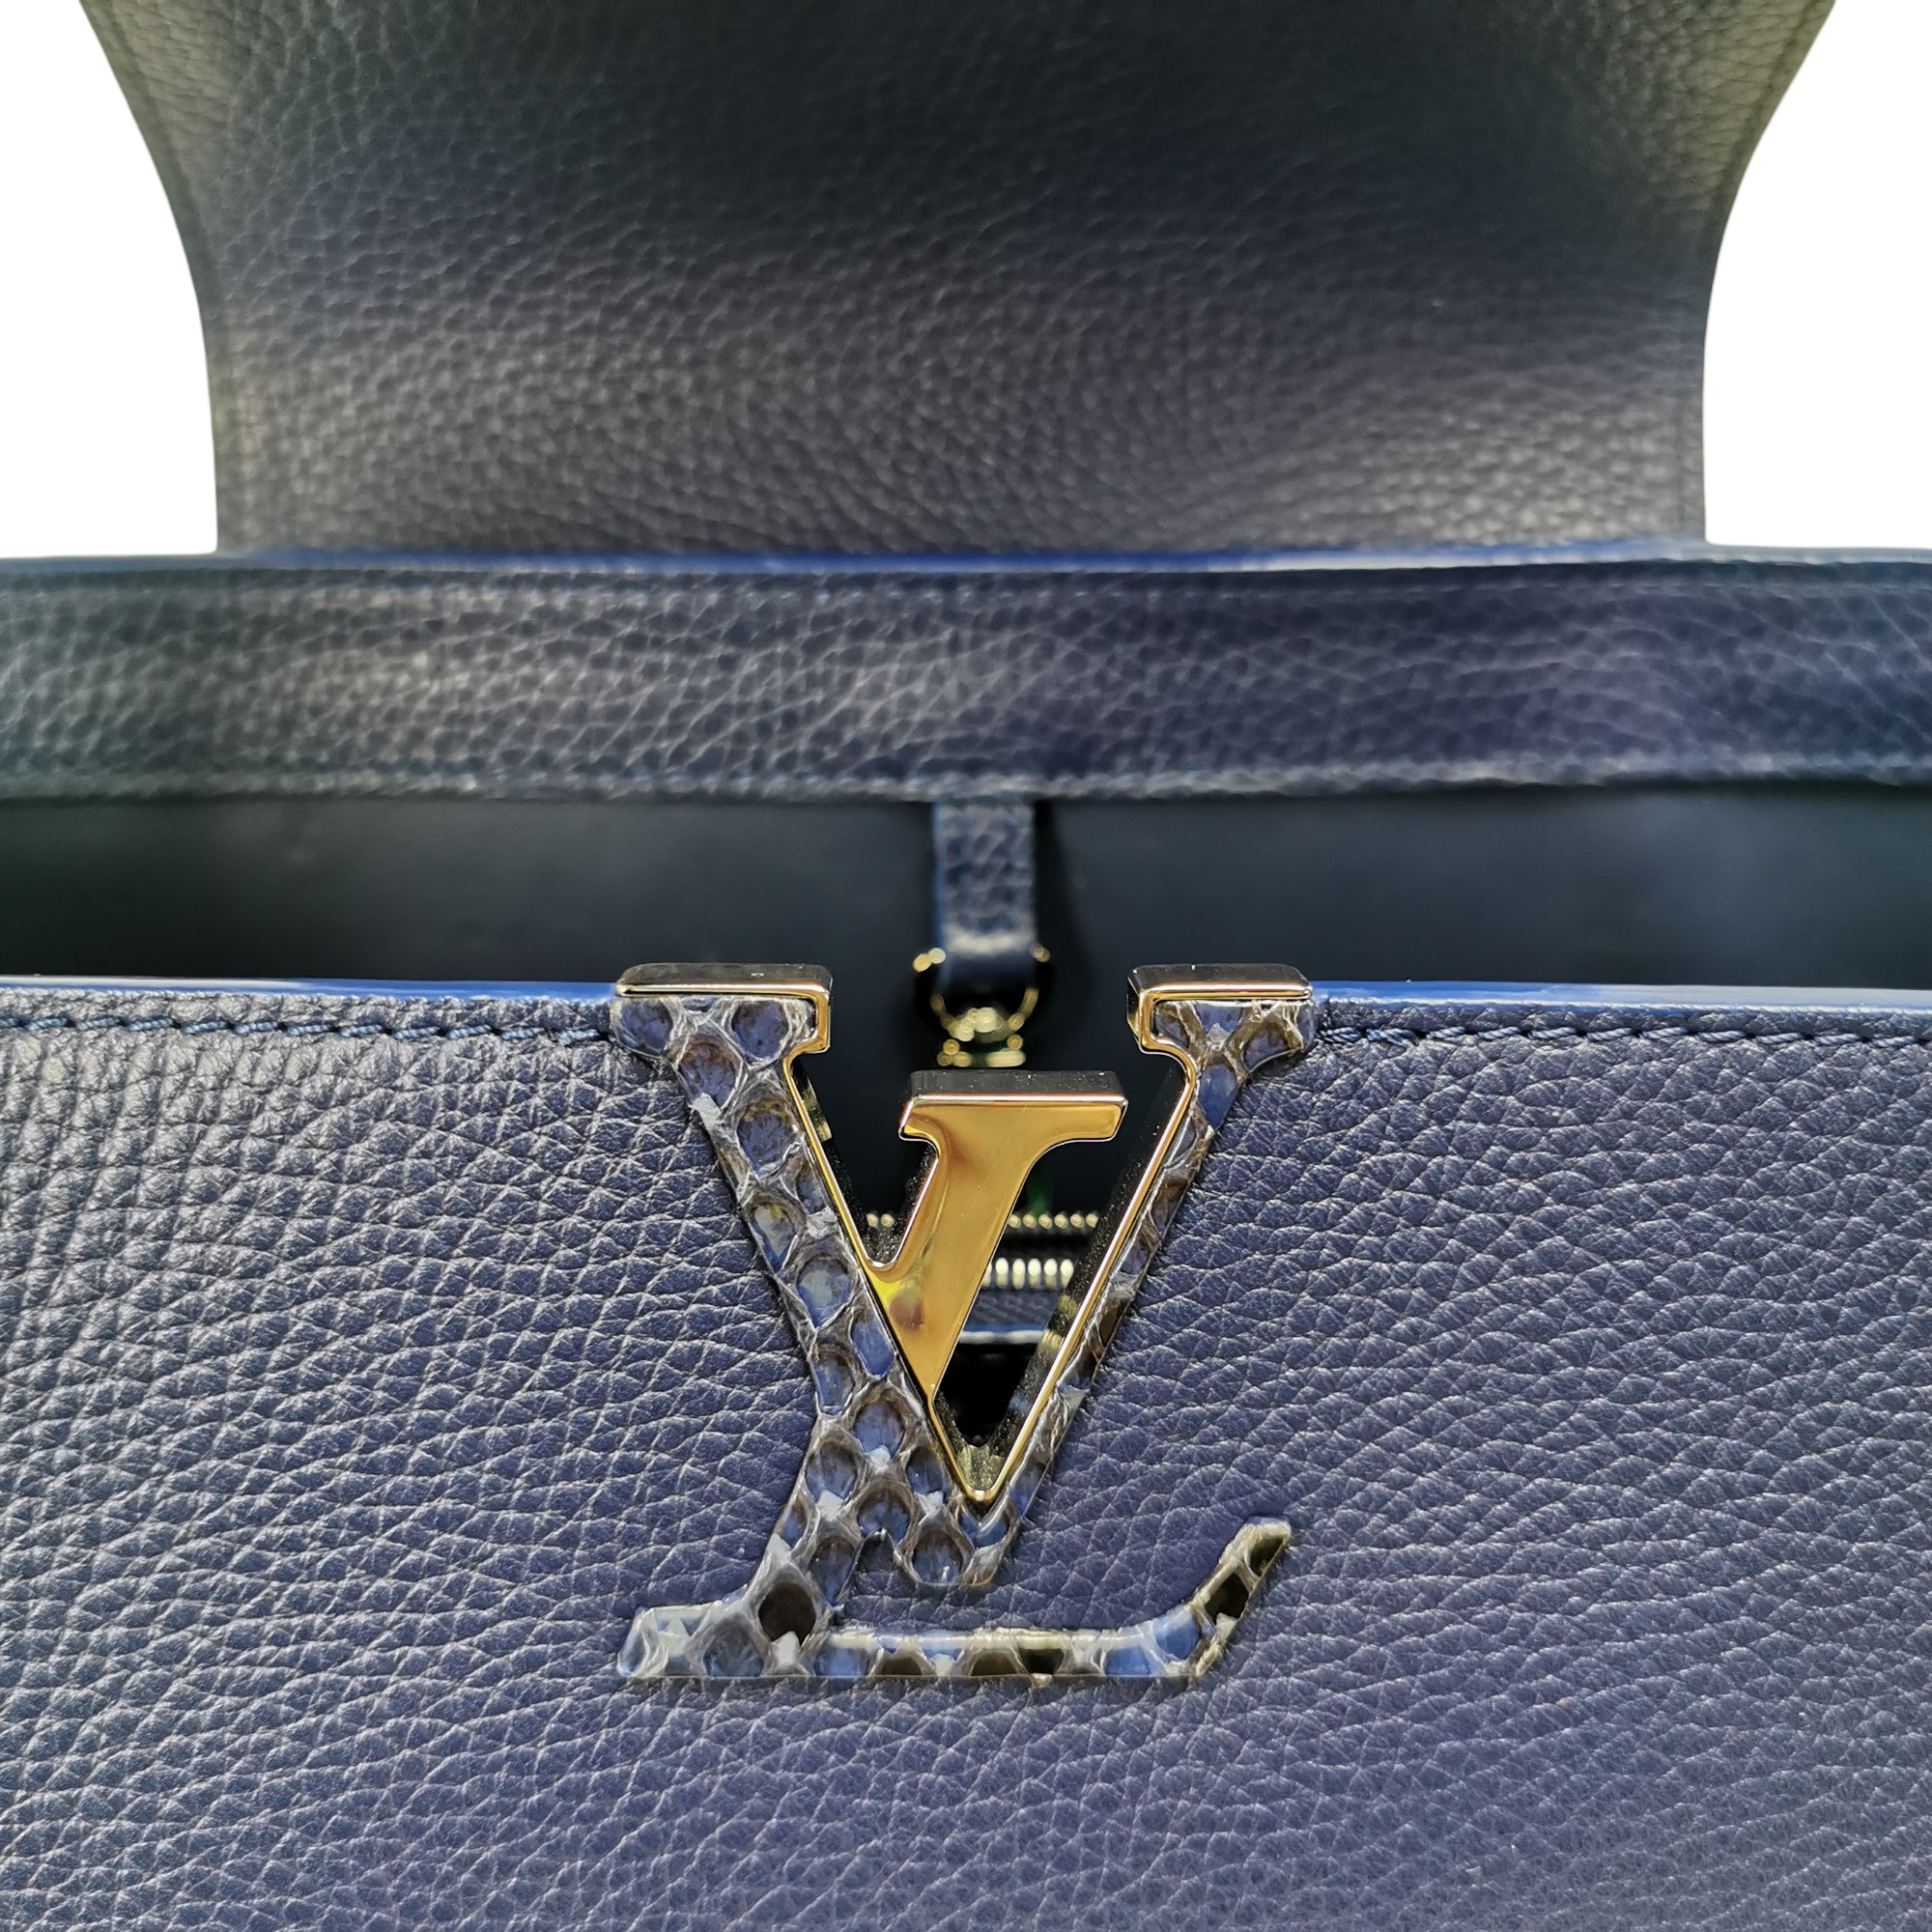 Louis Vuitton Capucines mm Exotic Blue Taurillon